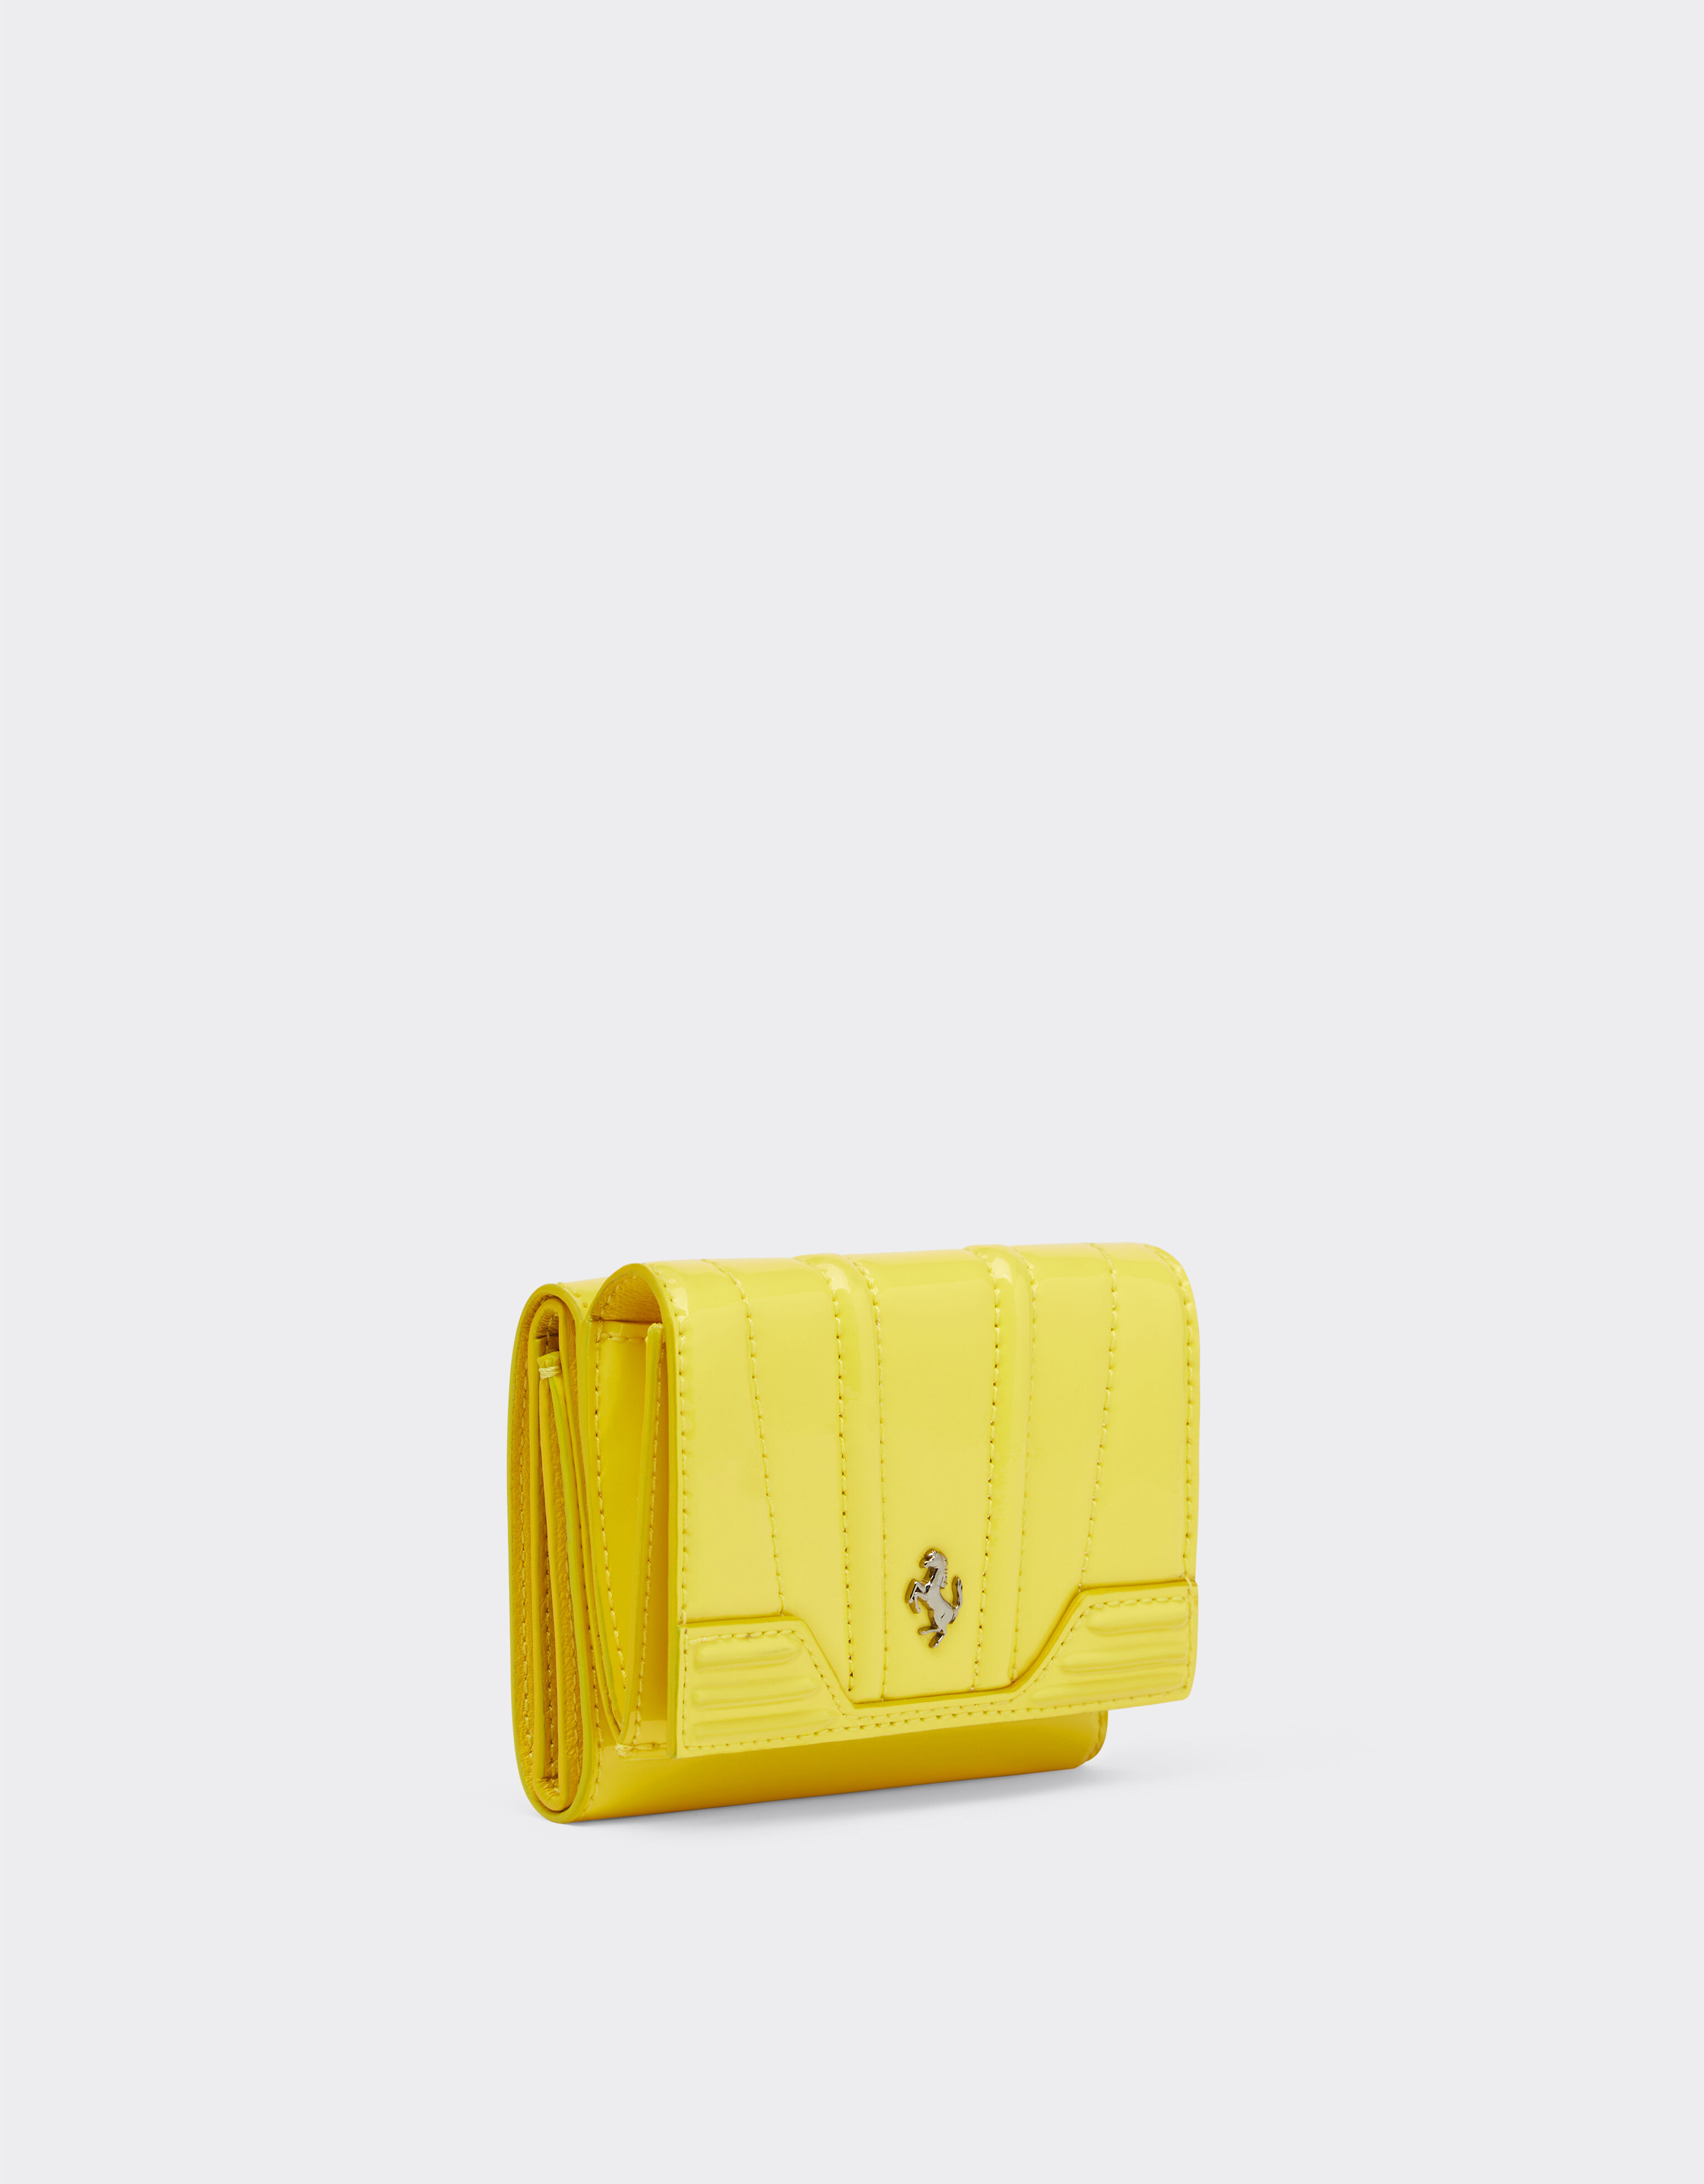 Ferrari Portemonnaie aus glänzendem Lackleder, dreifach faltbar Giallo Modena 20426f